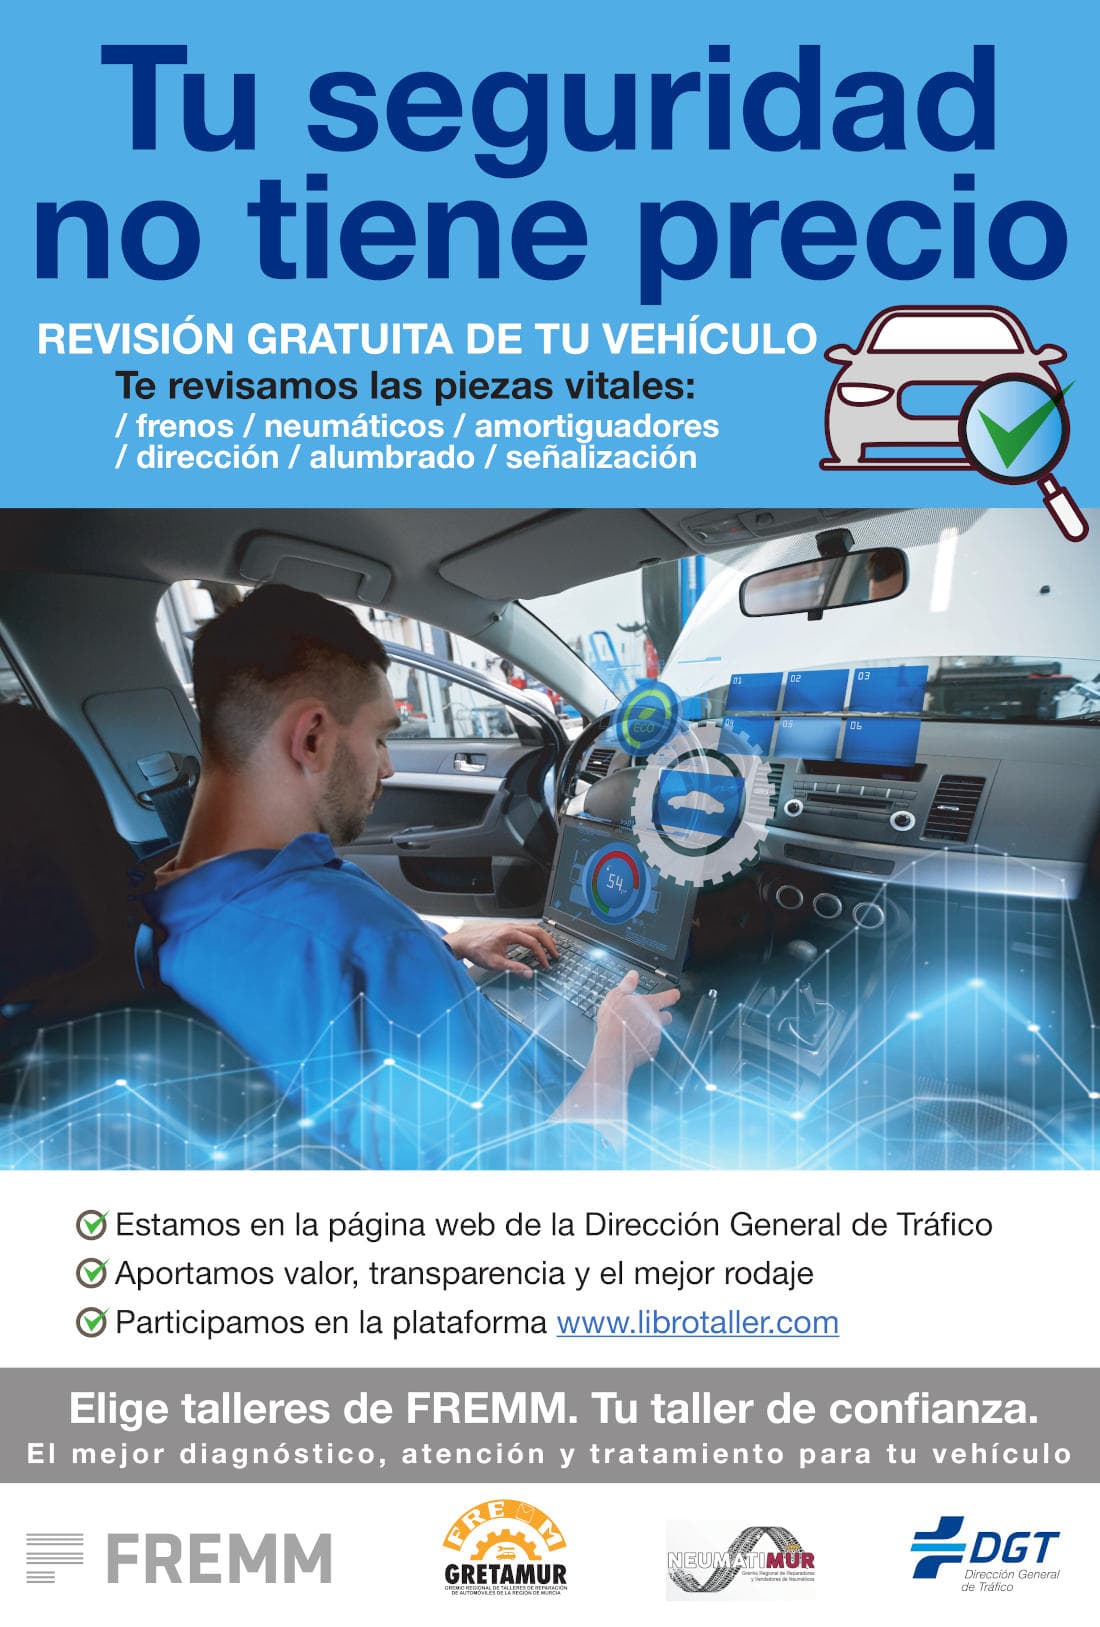 Taller Autofrutos - Revisión de vehículos gratuita durante la campaña de la DGT de Noviembre de 2019